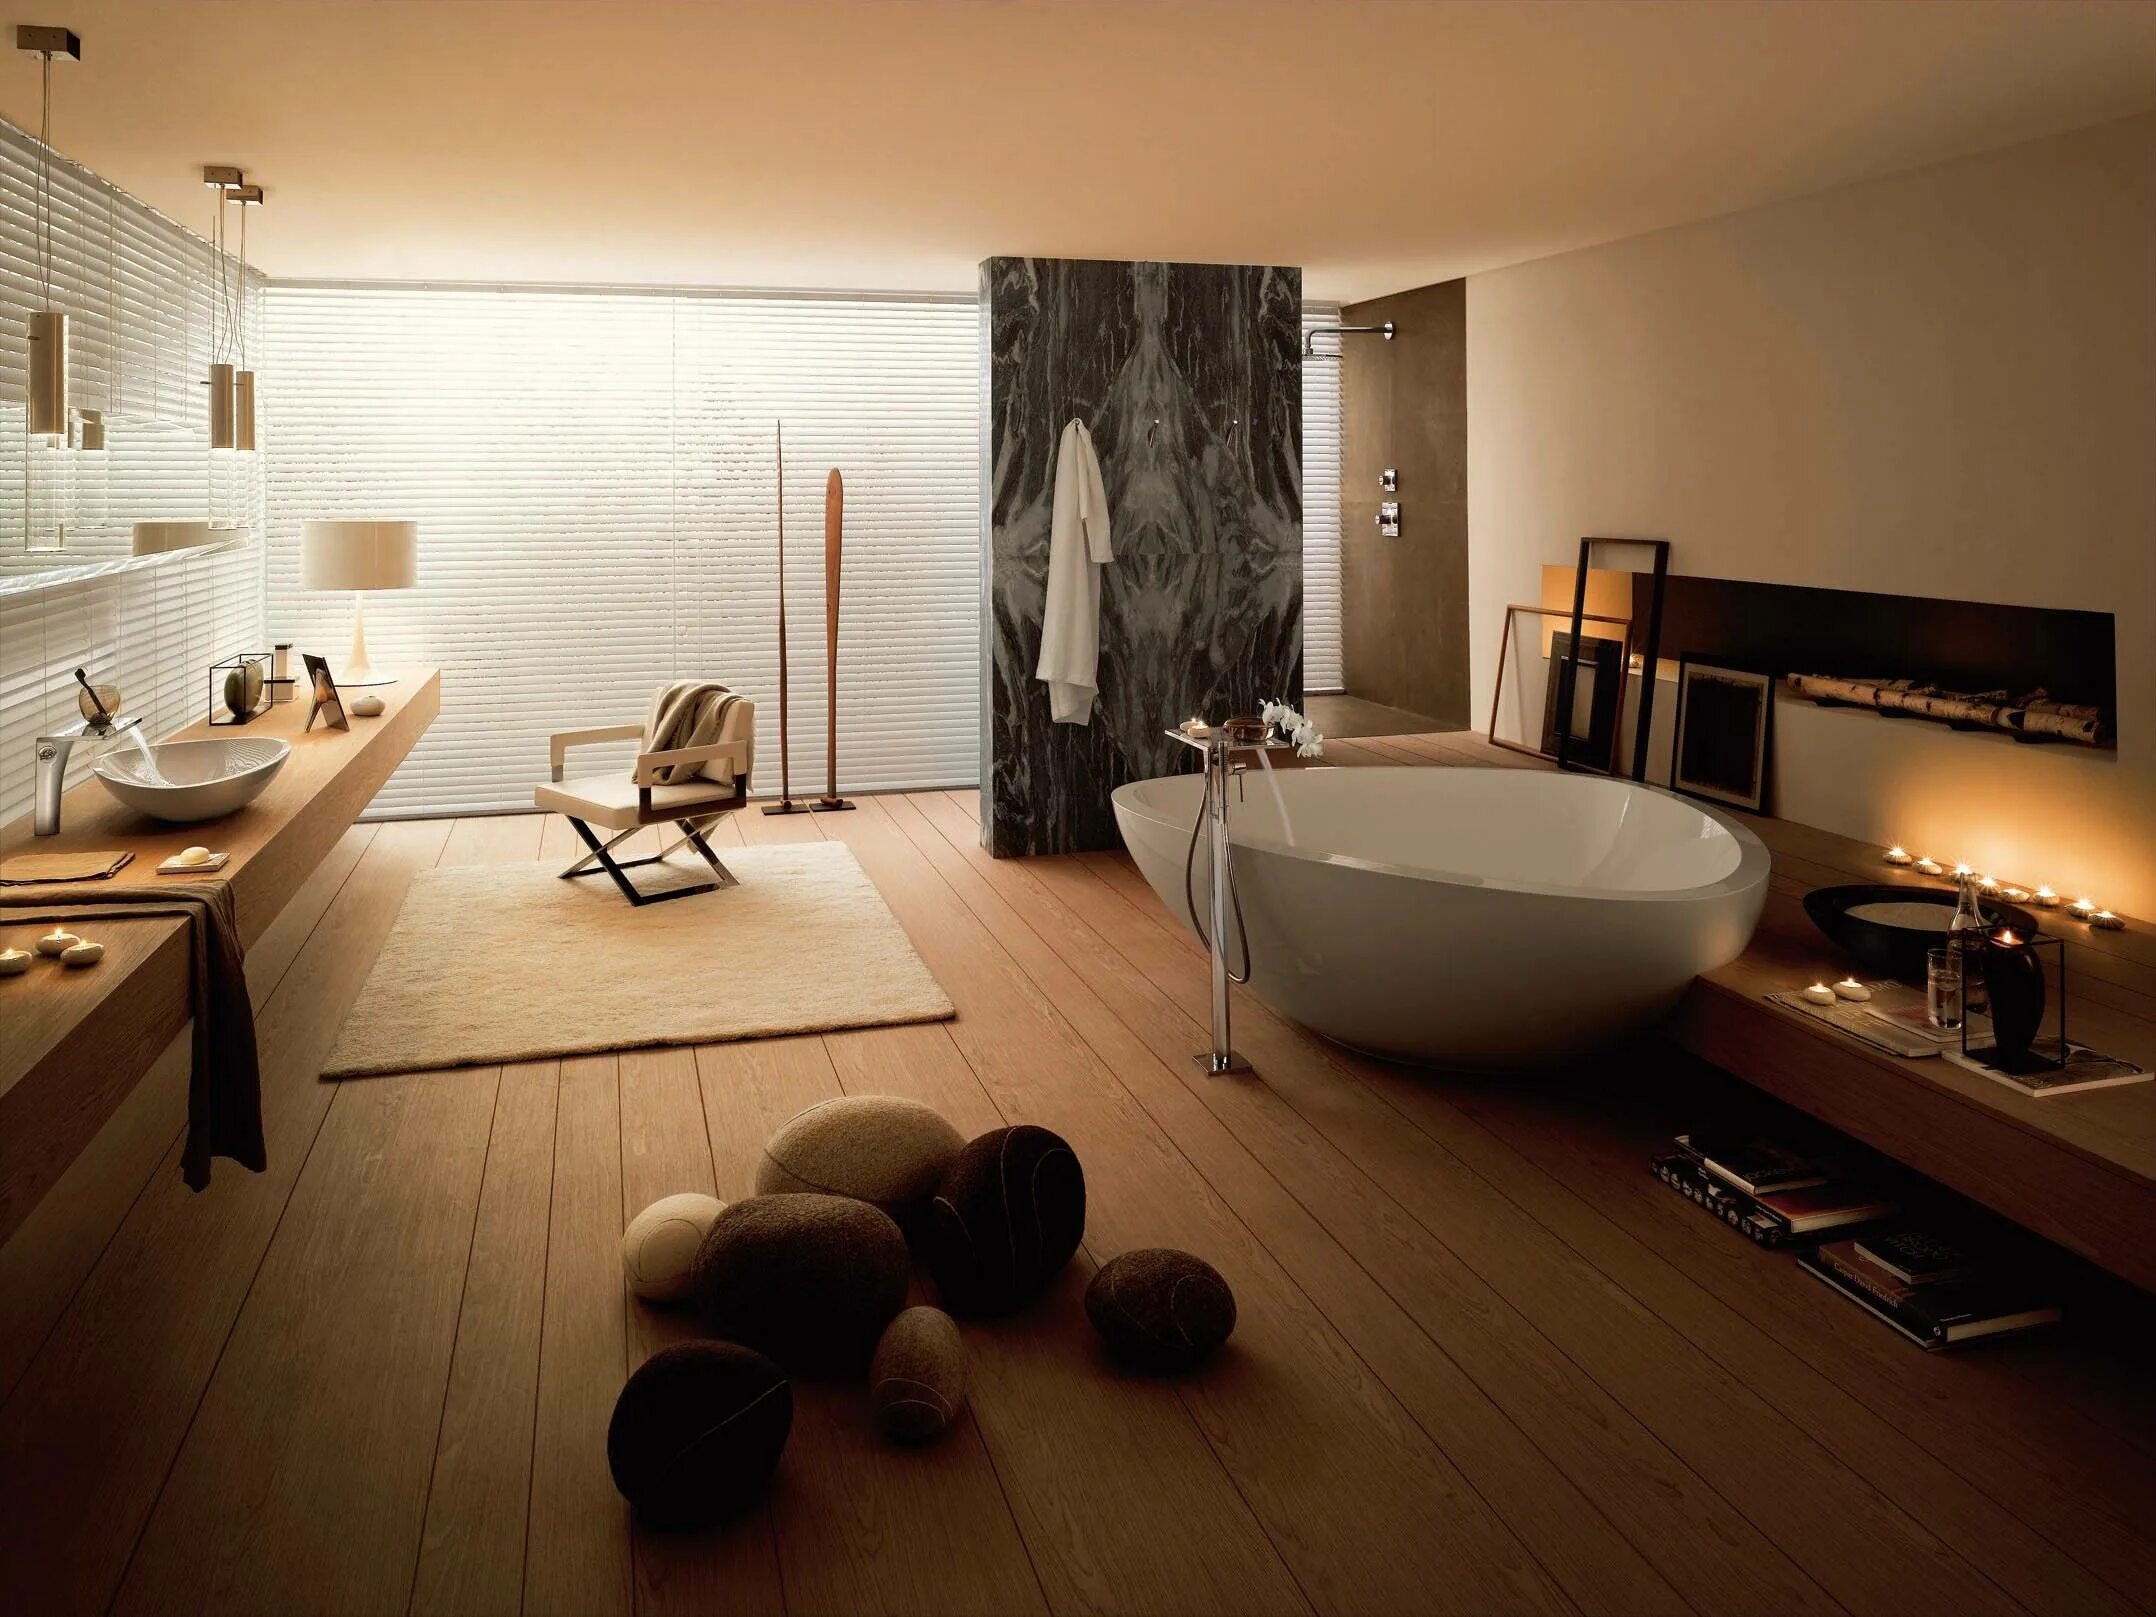 Ванной комната как красиво сделать. Зеркало Axor Massaud, 42240000. Стильная ванная комната. Современная ванная комната. Интерьер ванной комнаты.